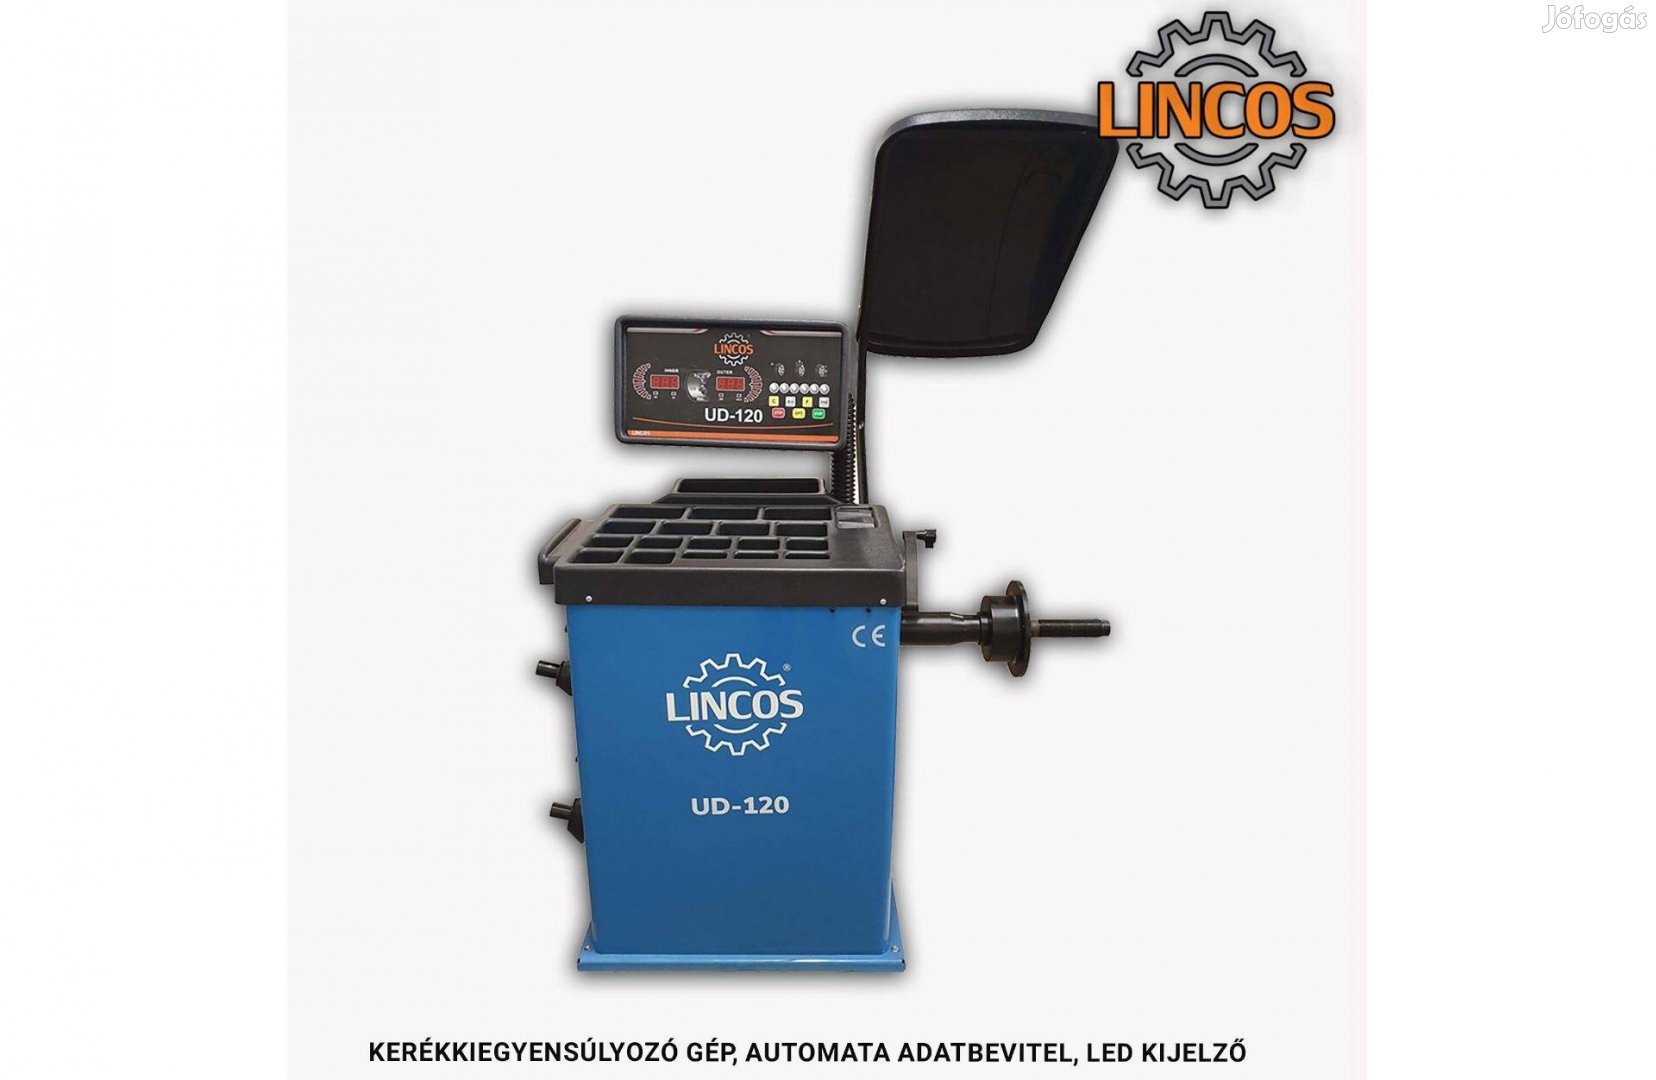 Kerékkiegyensúlyozó gép, automata adatbevitel, LED kijelző UD-120 Linc